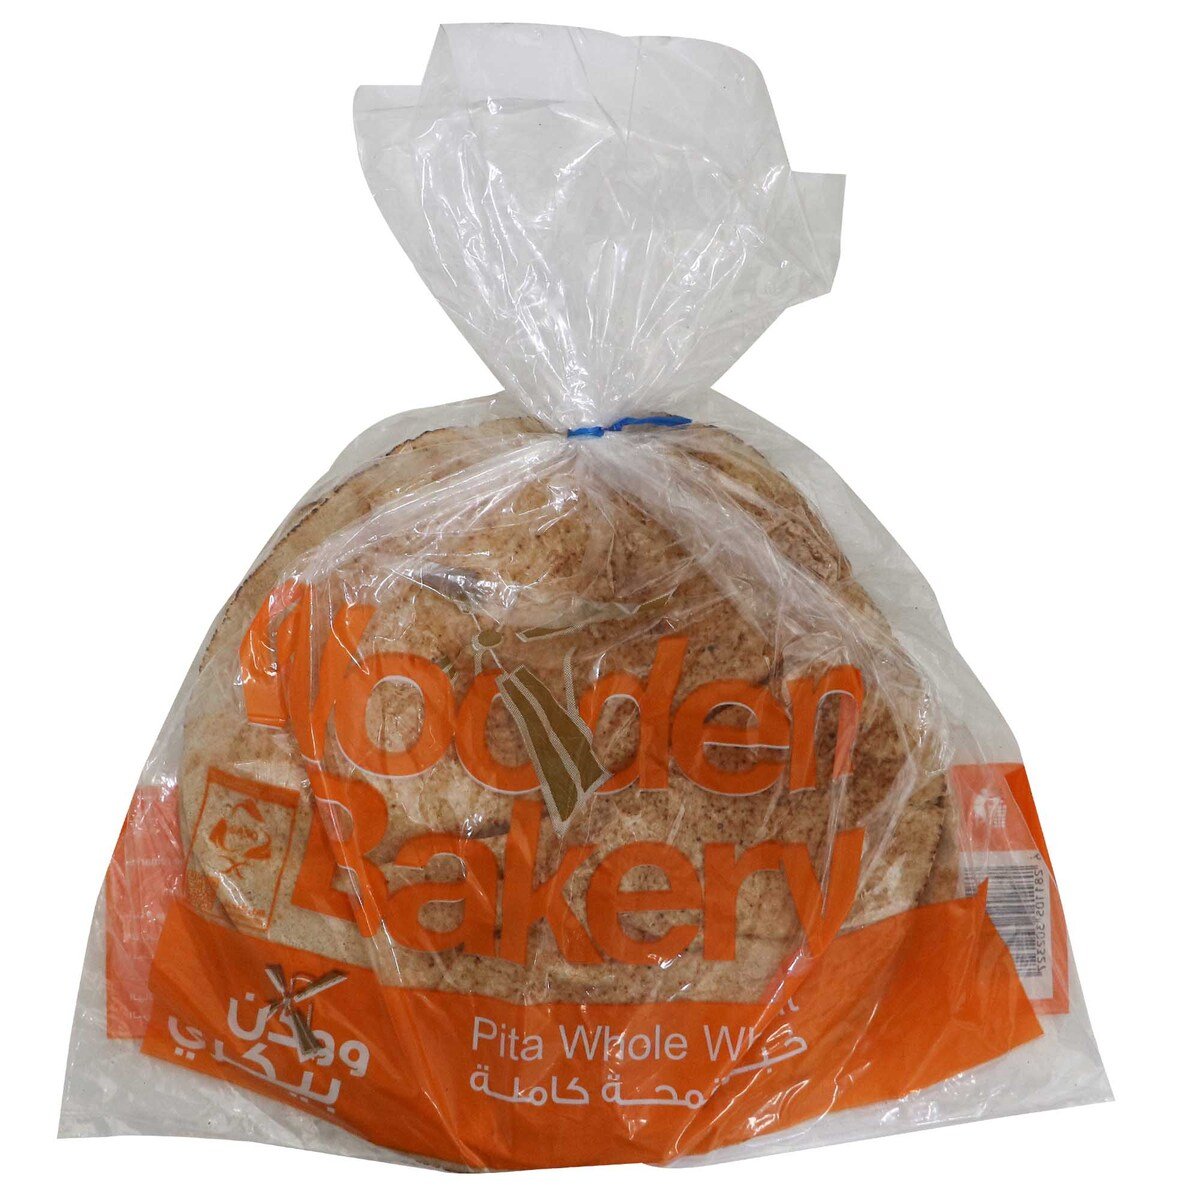 وودن بيكري خبز  عربي بالقمح الكامل - حبة واحدة